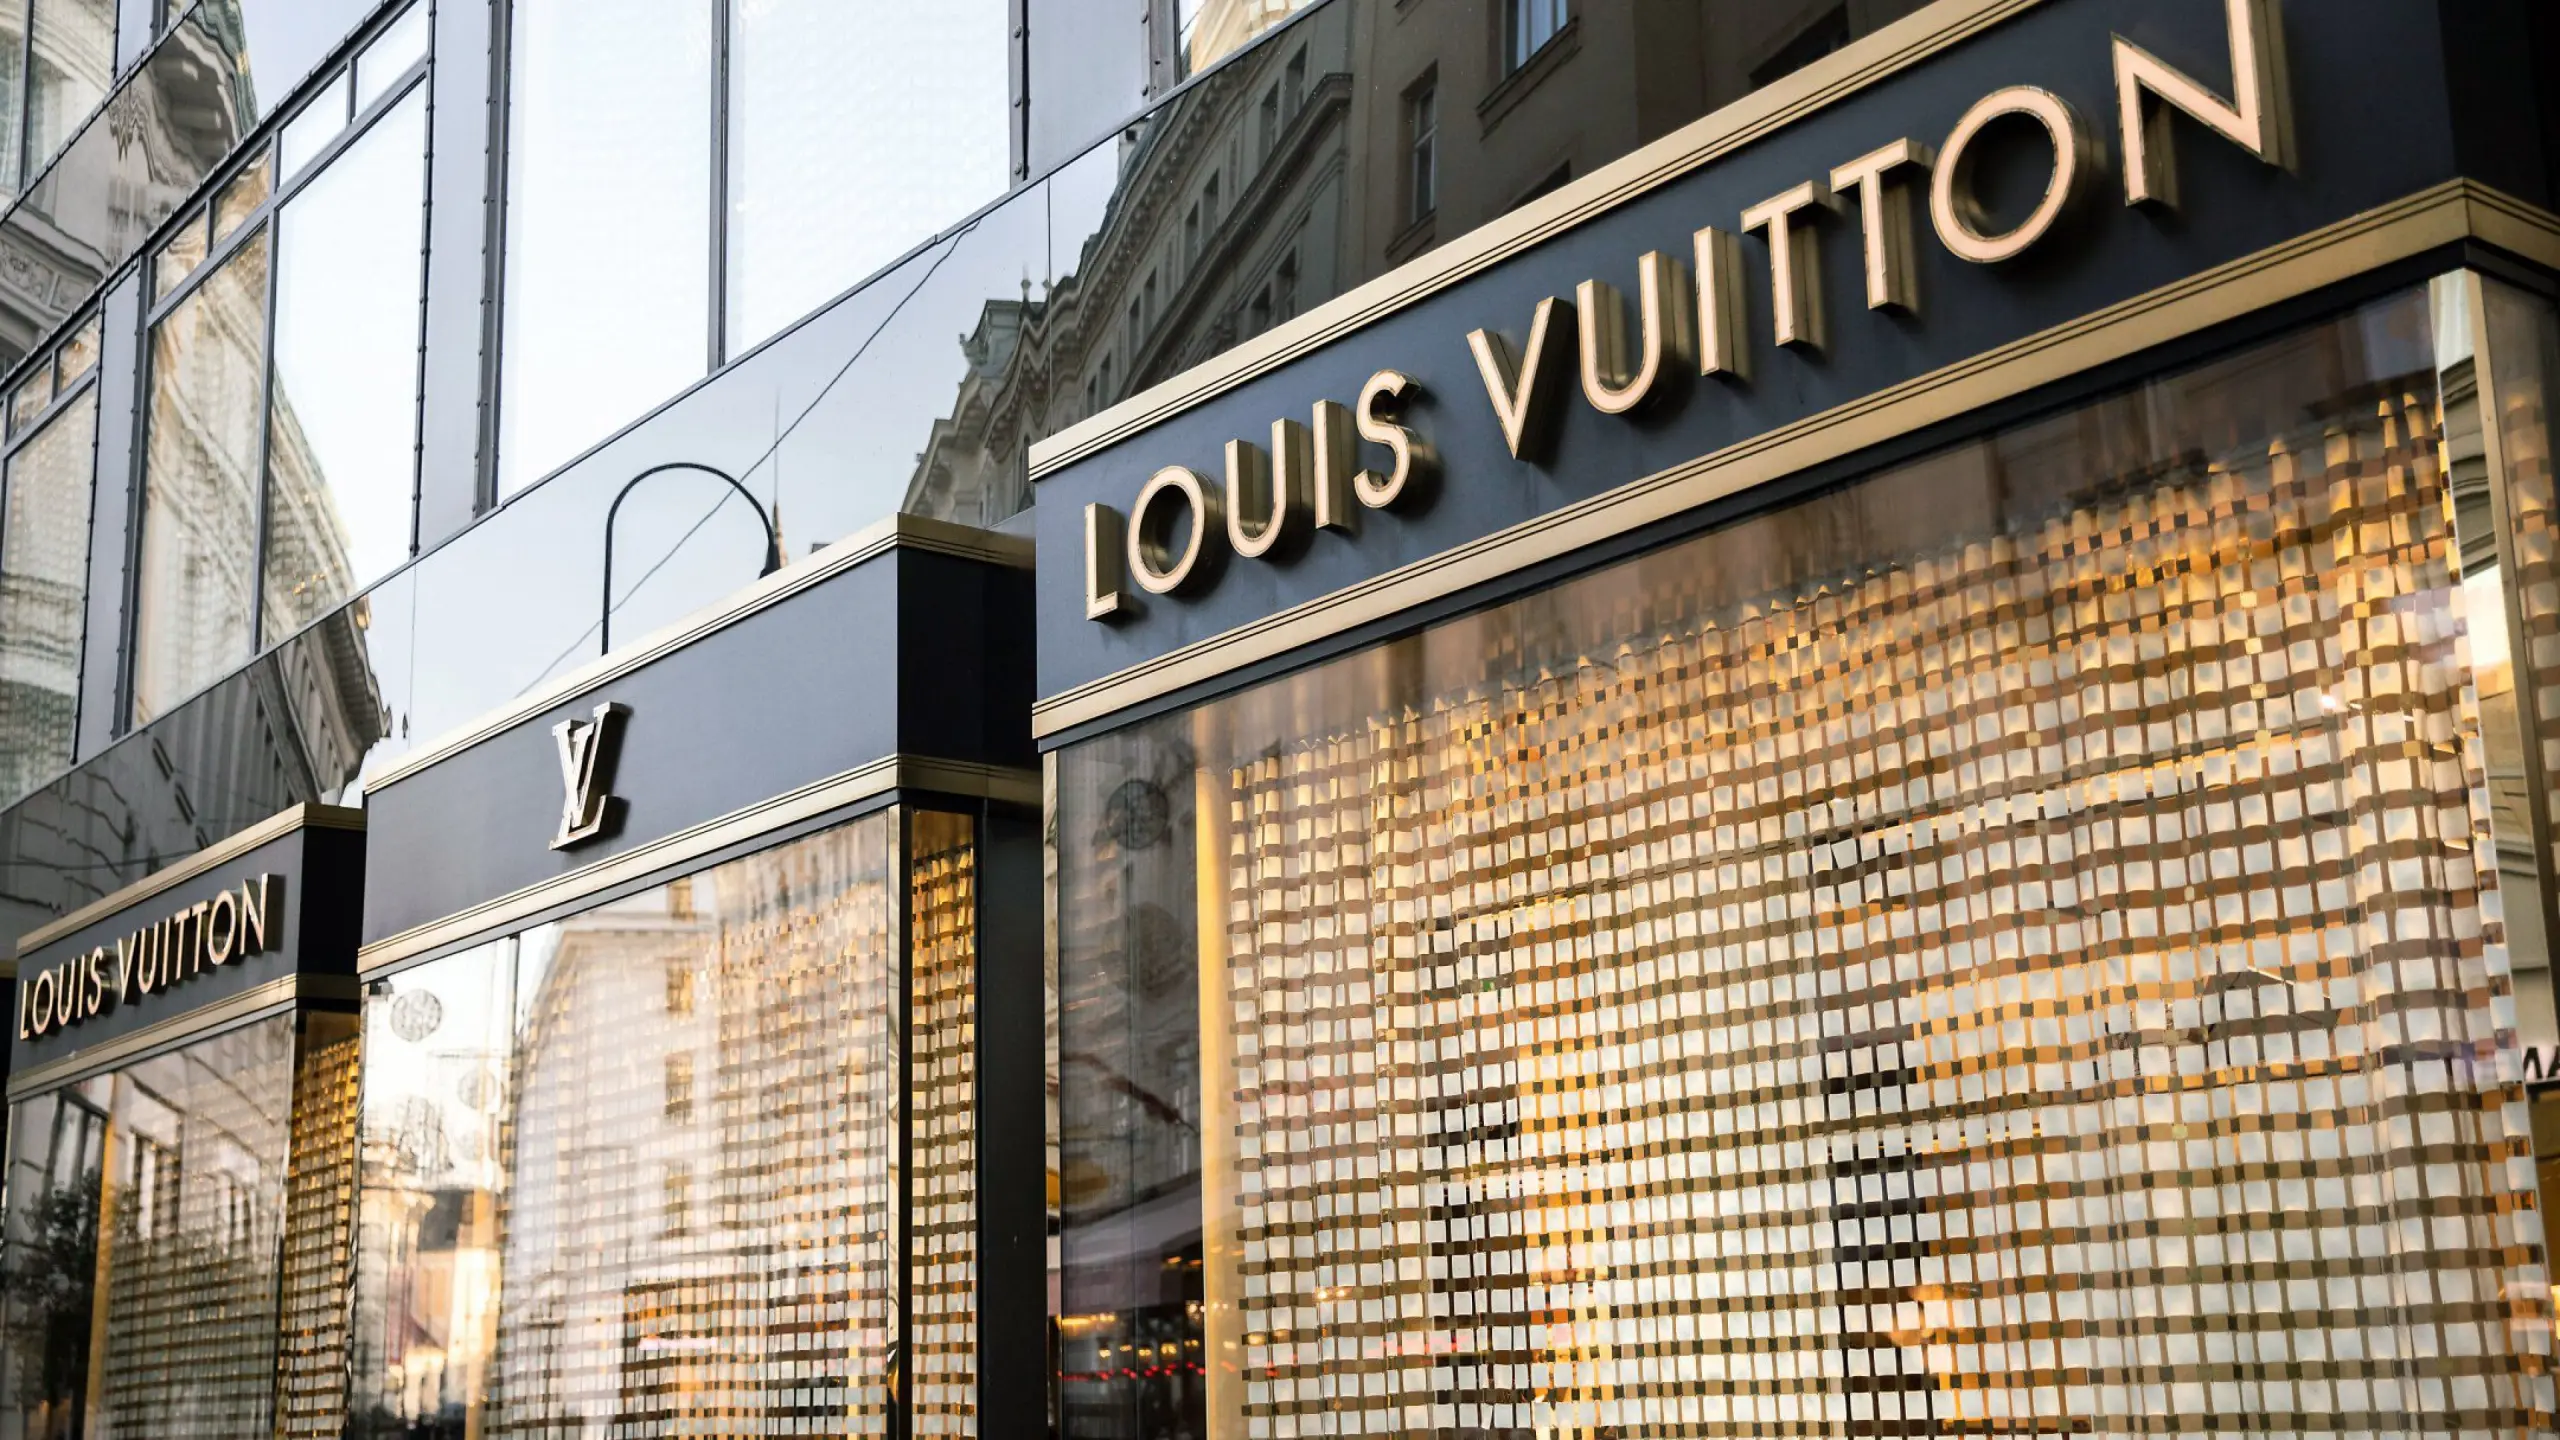 LVMH - Moët Hennessy Louis Vuitton SE: Der Luxusgüter-Konzern im